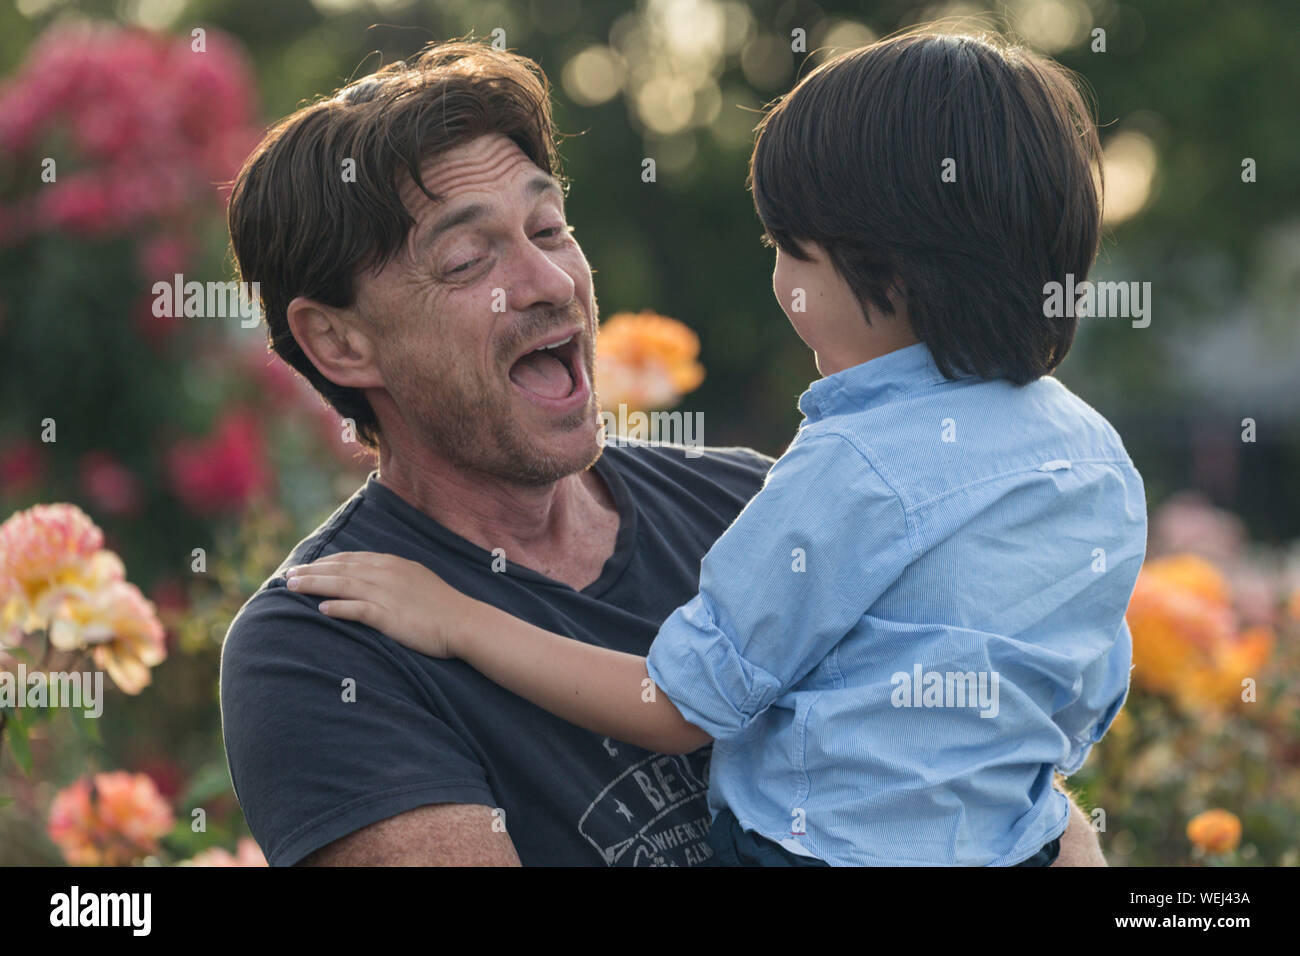 Kaukasische Vater Holding gemischt ethnischen asiatischen 5-jährigen Sohn, beide glücklich, San Jose, Kalifornien Stockfoto